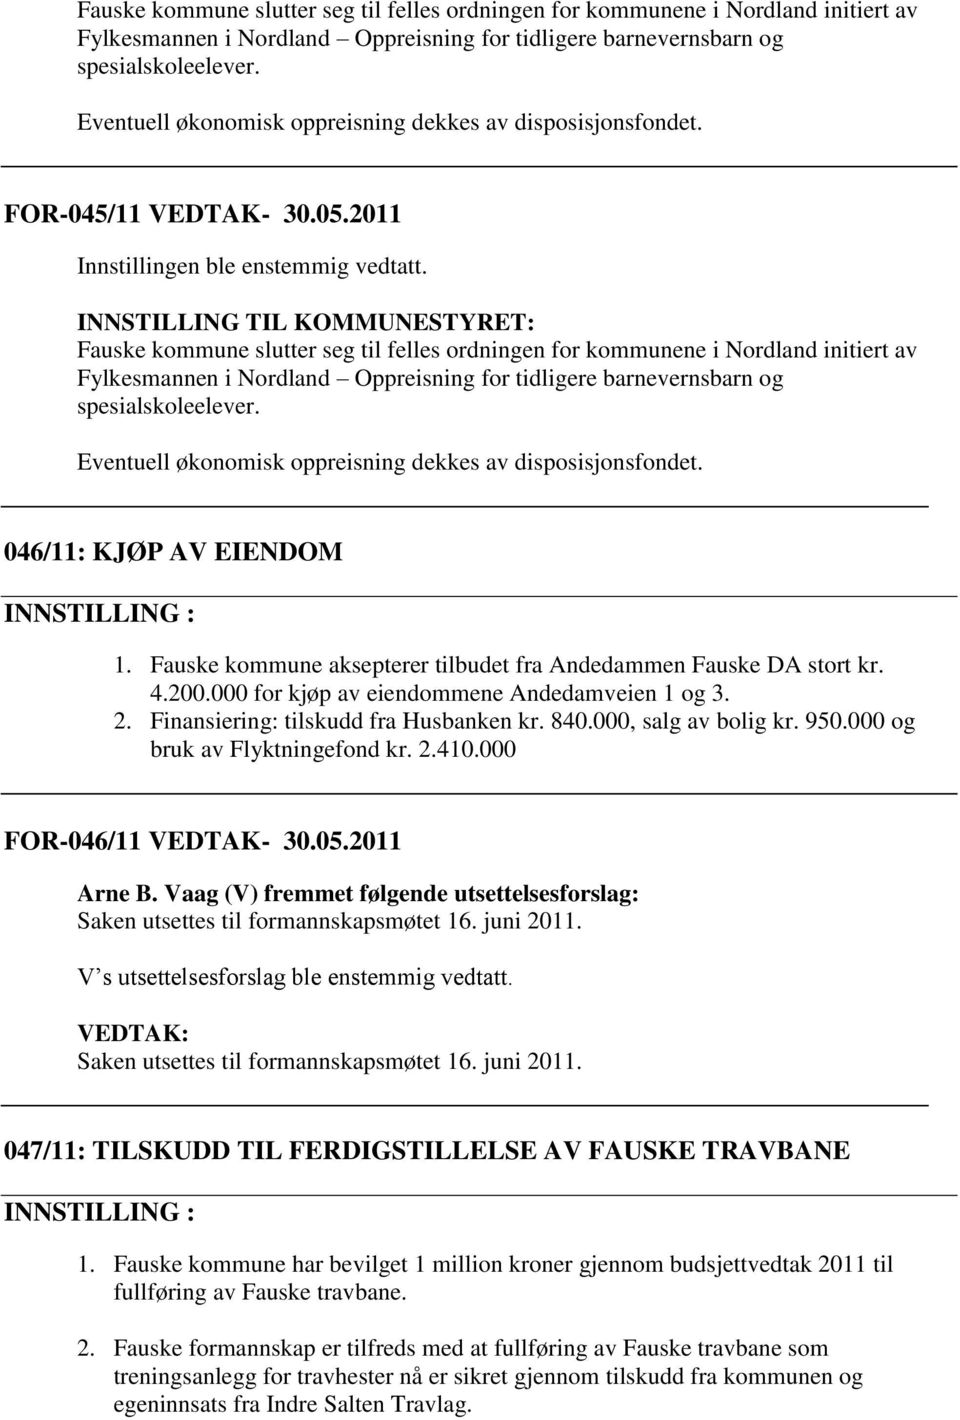 046/11: KJØP AV EIENDOM 1. Fauske kommune aksepterer tilbudet fra Andedammen Fauske DA stort kr. 4.200.000 for kjøp av eiendommene Andedamveien 1 og 3. 2. Finansiering: tilskudd fra Husbanken kr. 840.